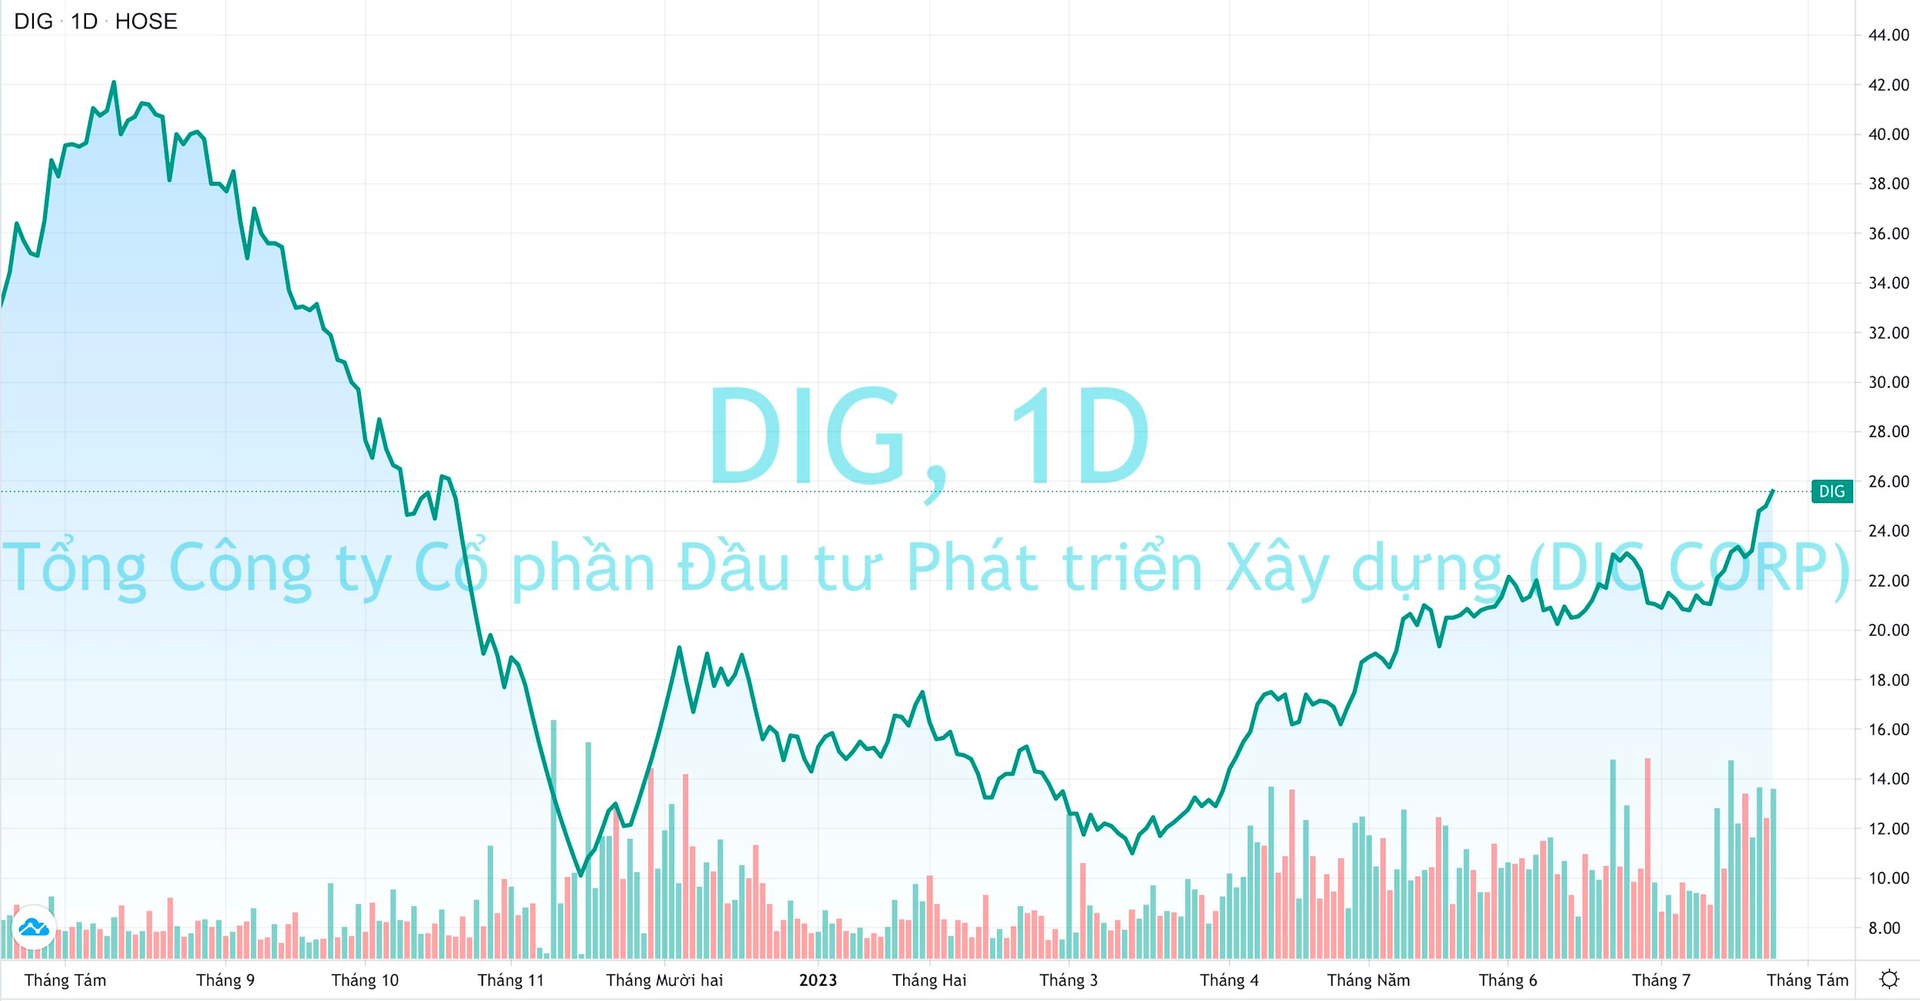 DIC Corp muốn “mở khoá” cổ phiếu ESOP 2021 sớm 1 năm, 15 triệu cổ phiếu DIG sắp tuồn ra thị trường? - Ảnh 2.